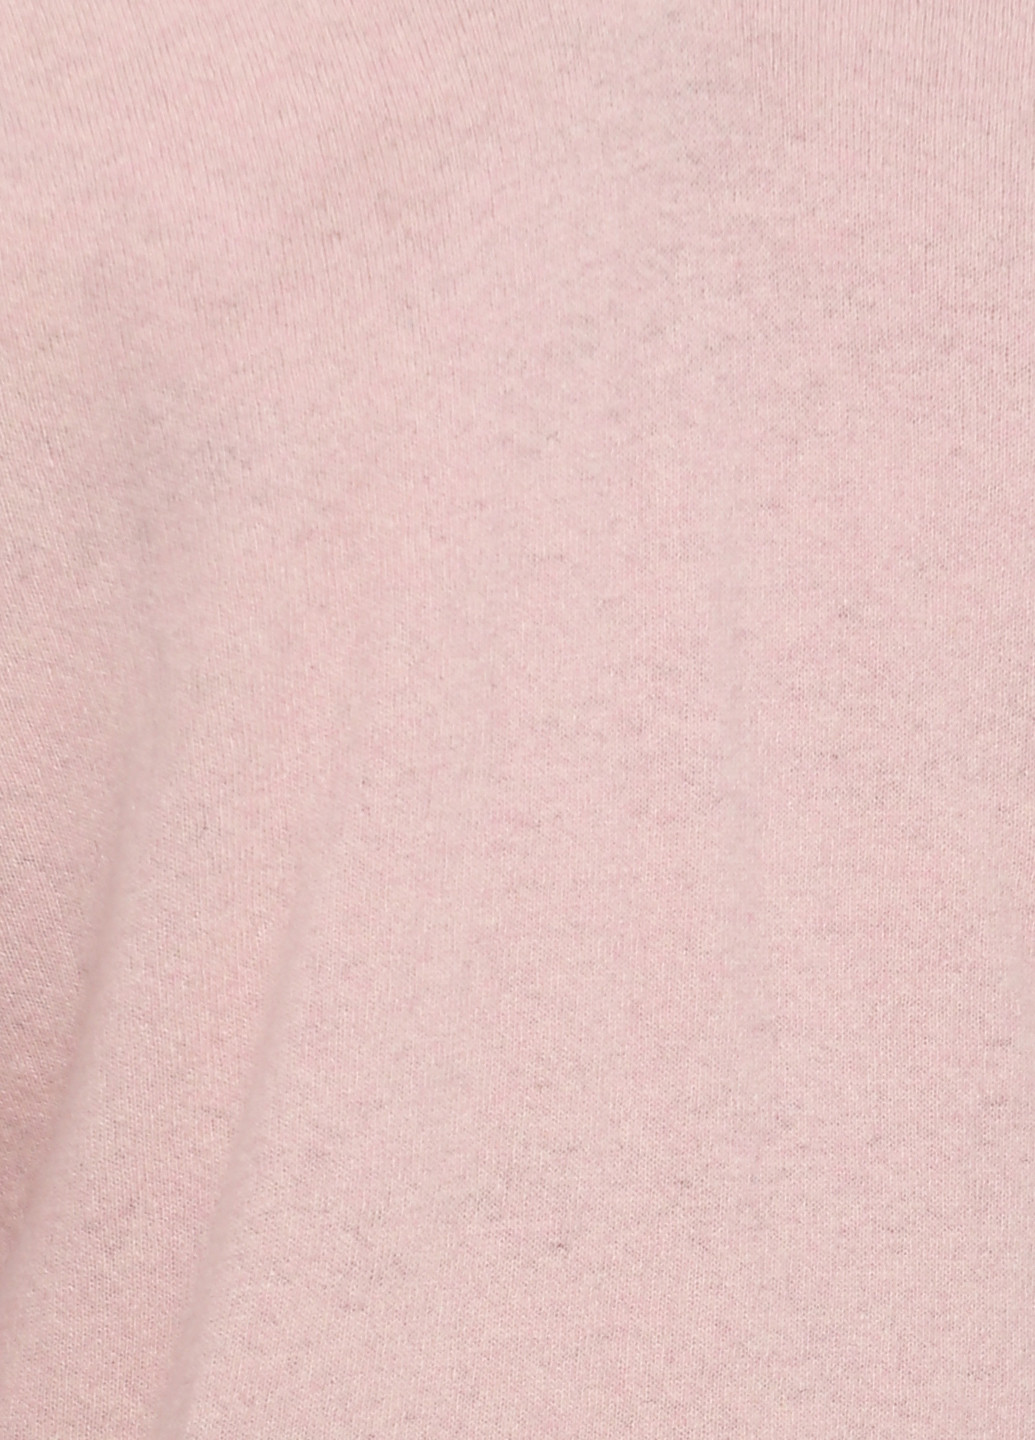 Розовый демисезонный пуловер пуловер Frarose